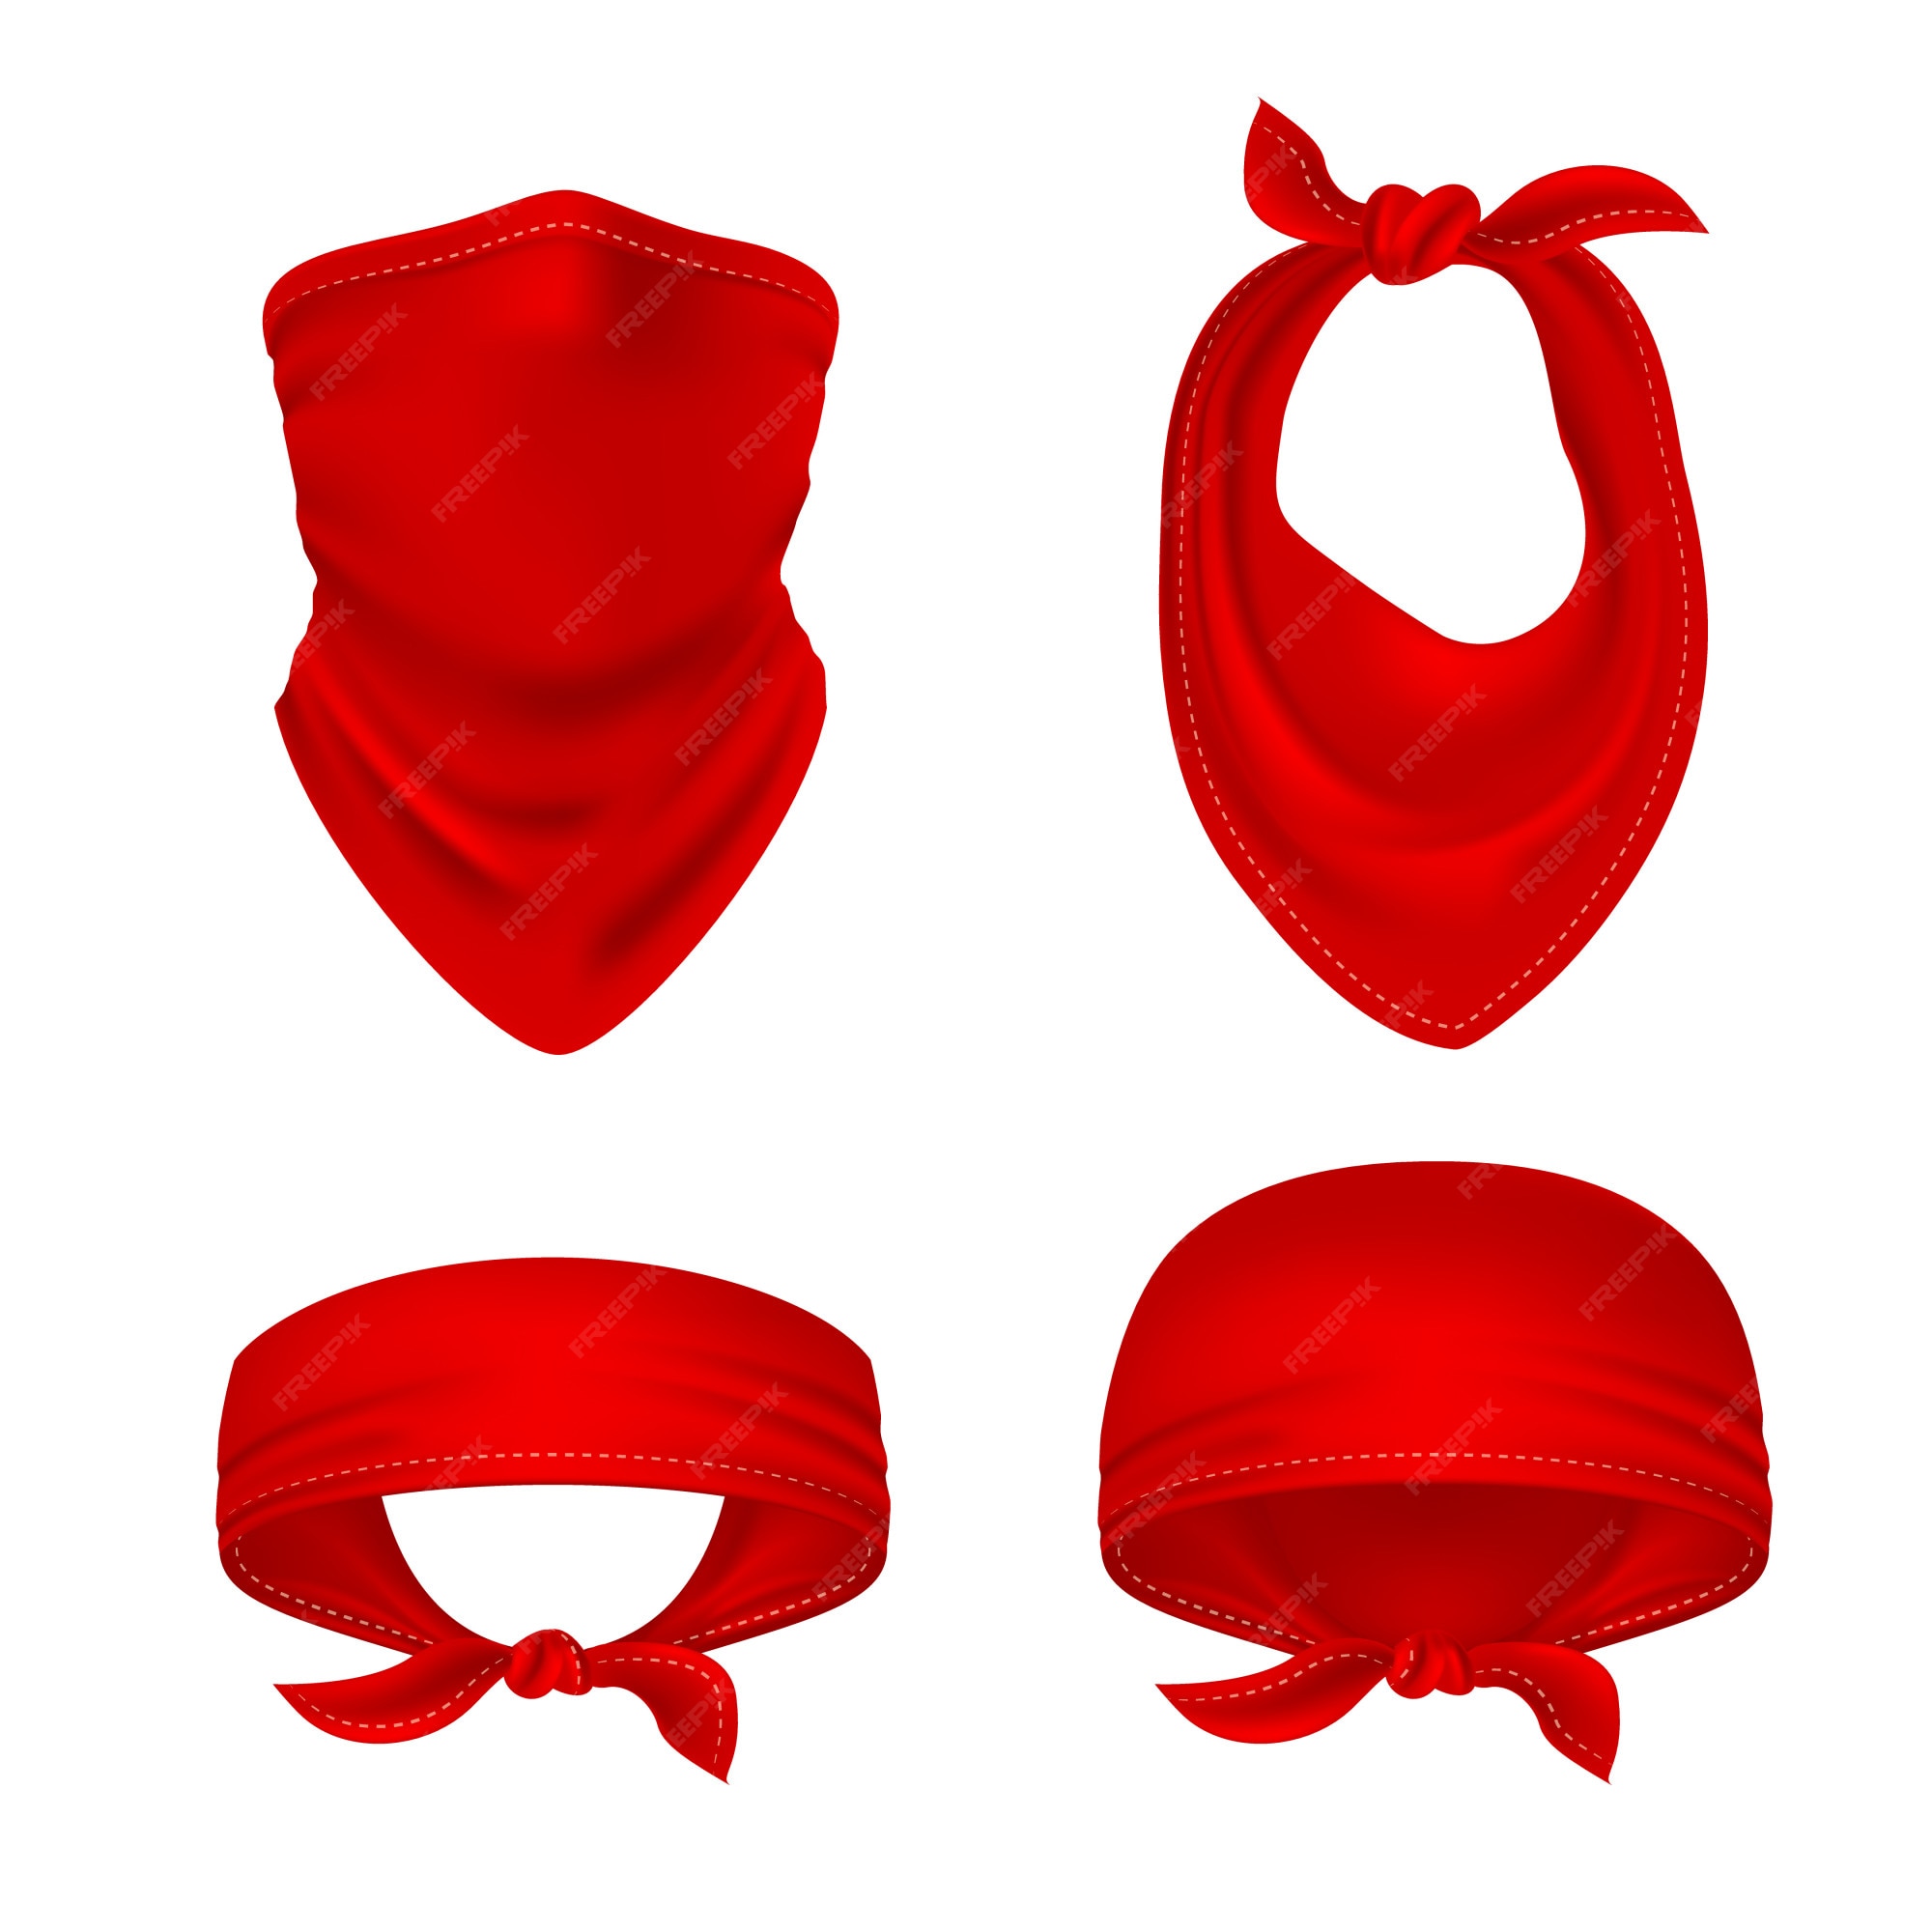 Pañuelo rojo de vaquero o motero, chal de de pañuelo. pañuelo en blanco uniforme unisex. conjunto de vector aislado de ropa | Vector Premium